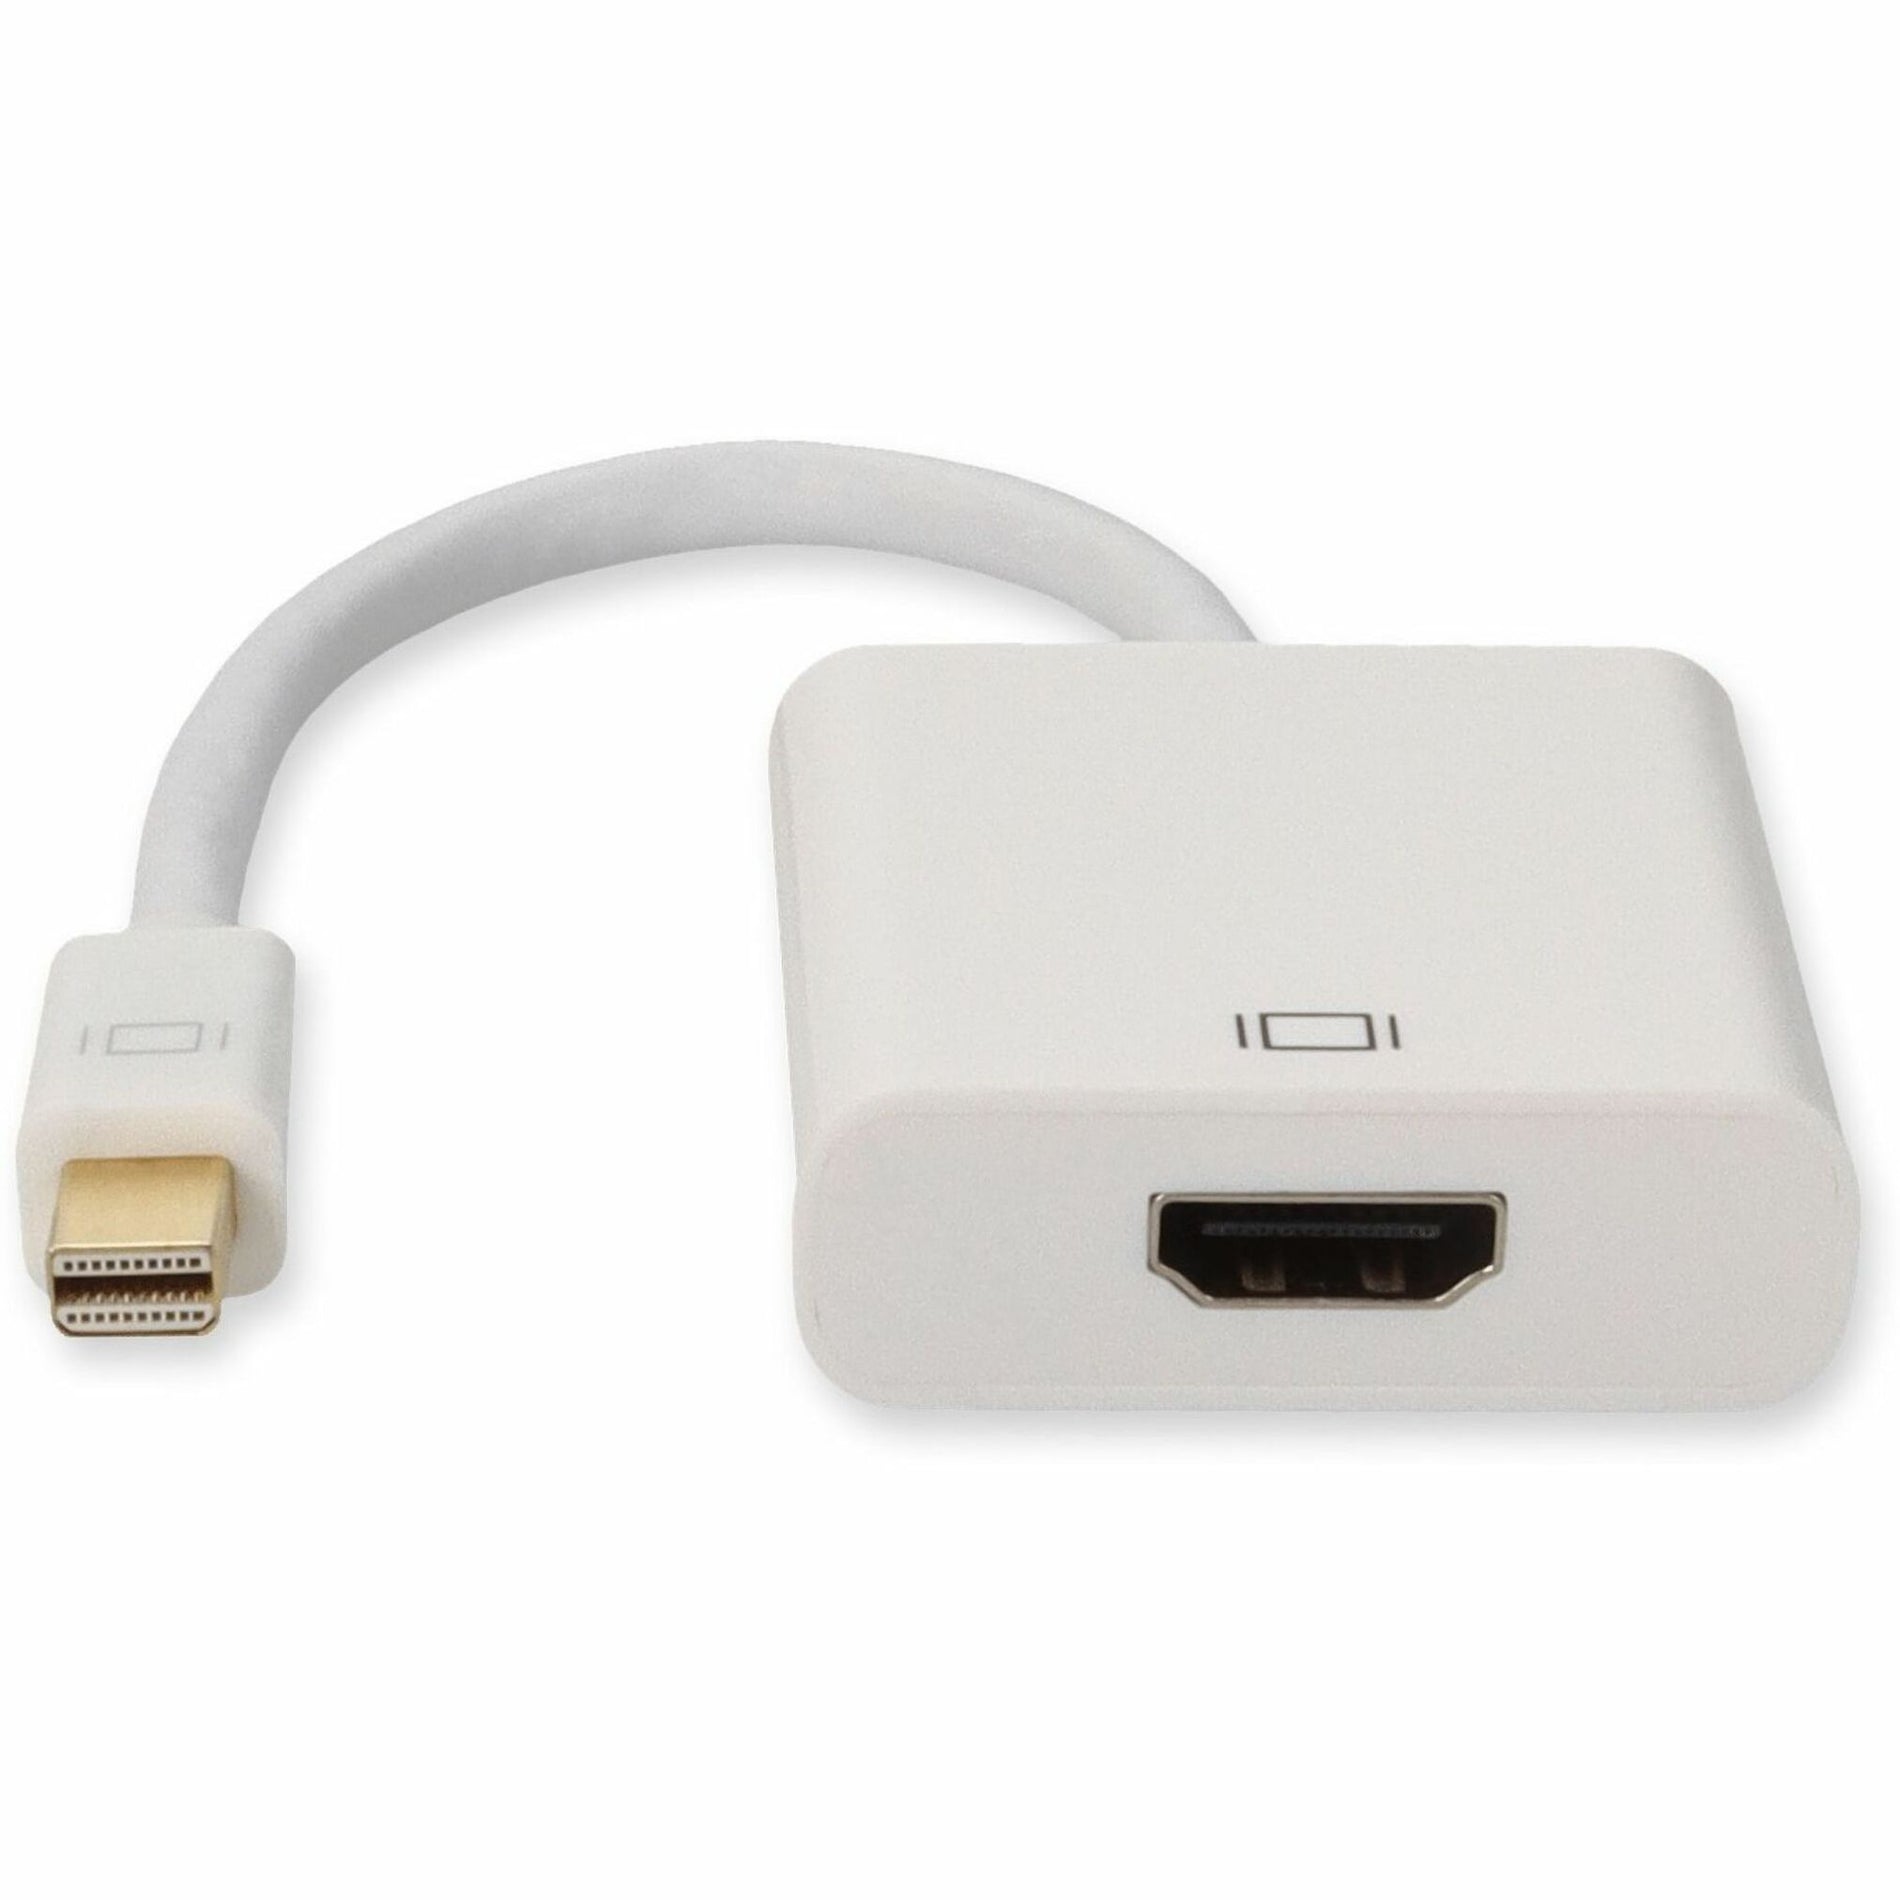 محول Mini-Displayport إلى HDMI كبل محول - ذكر إلى أنثى، ضمان لمدة ٣ سنوات، الولايات المتحدة العلامة التجارية: MDISPLAYPORT2HDMIW